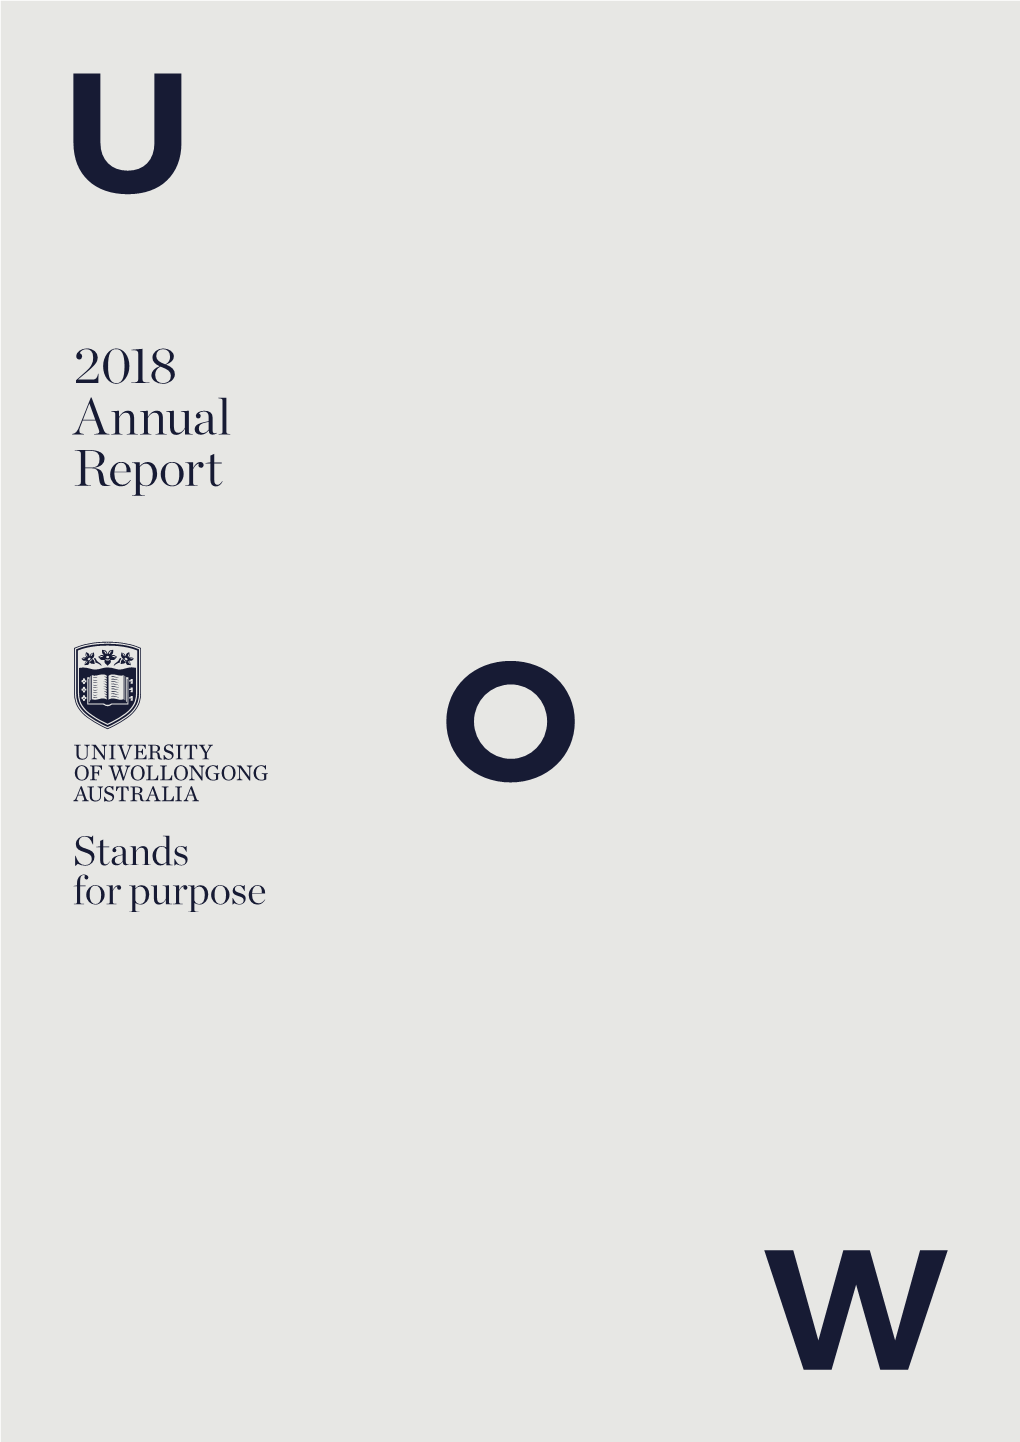 2018 Annual Report 2018 ANNUAL REPORT 2018 ANNUAL